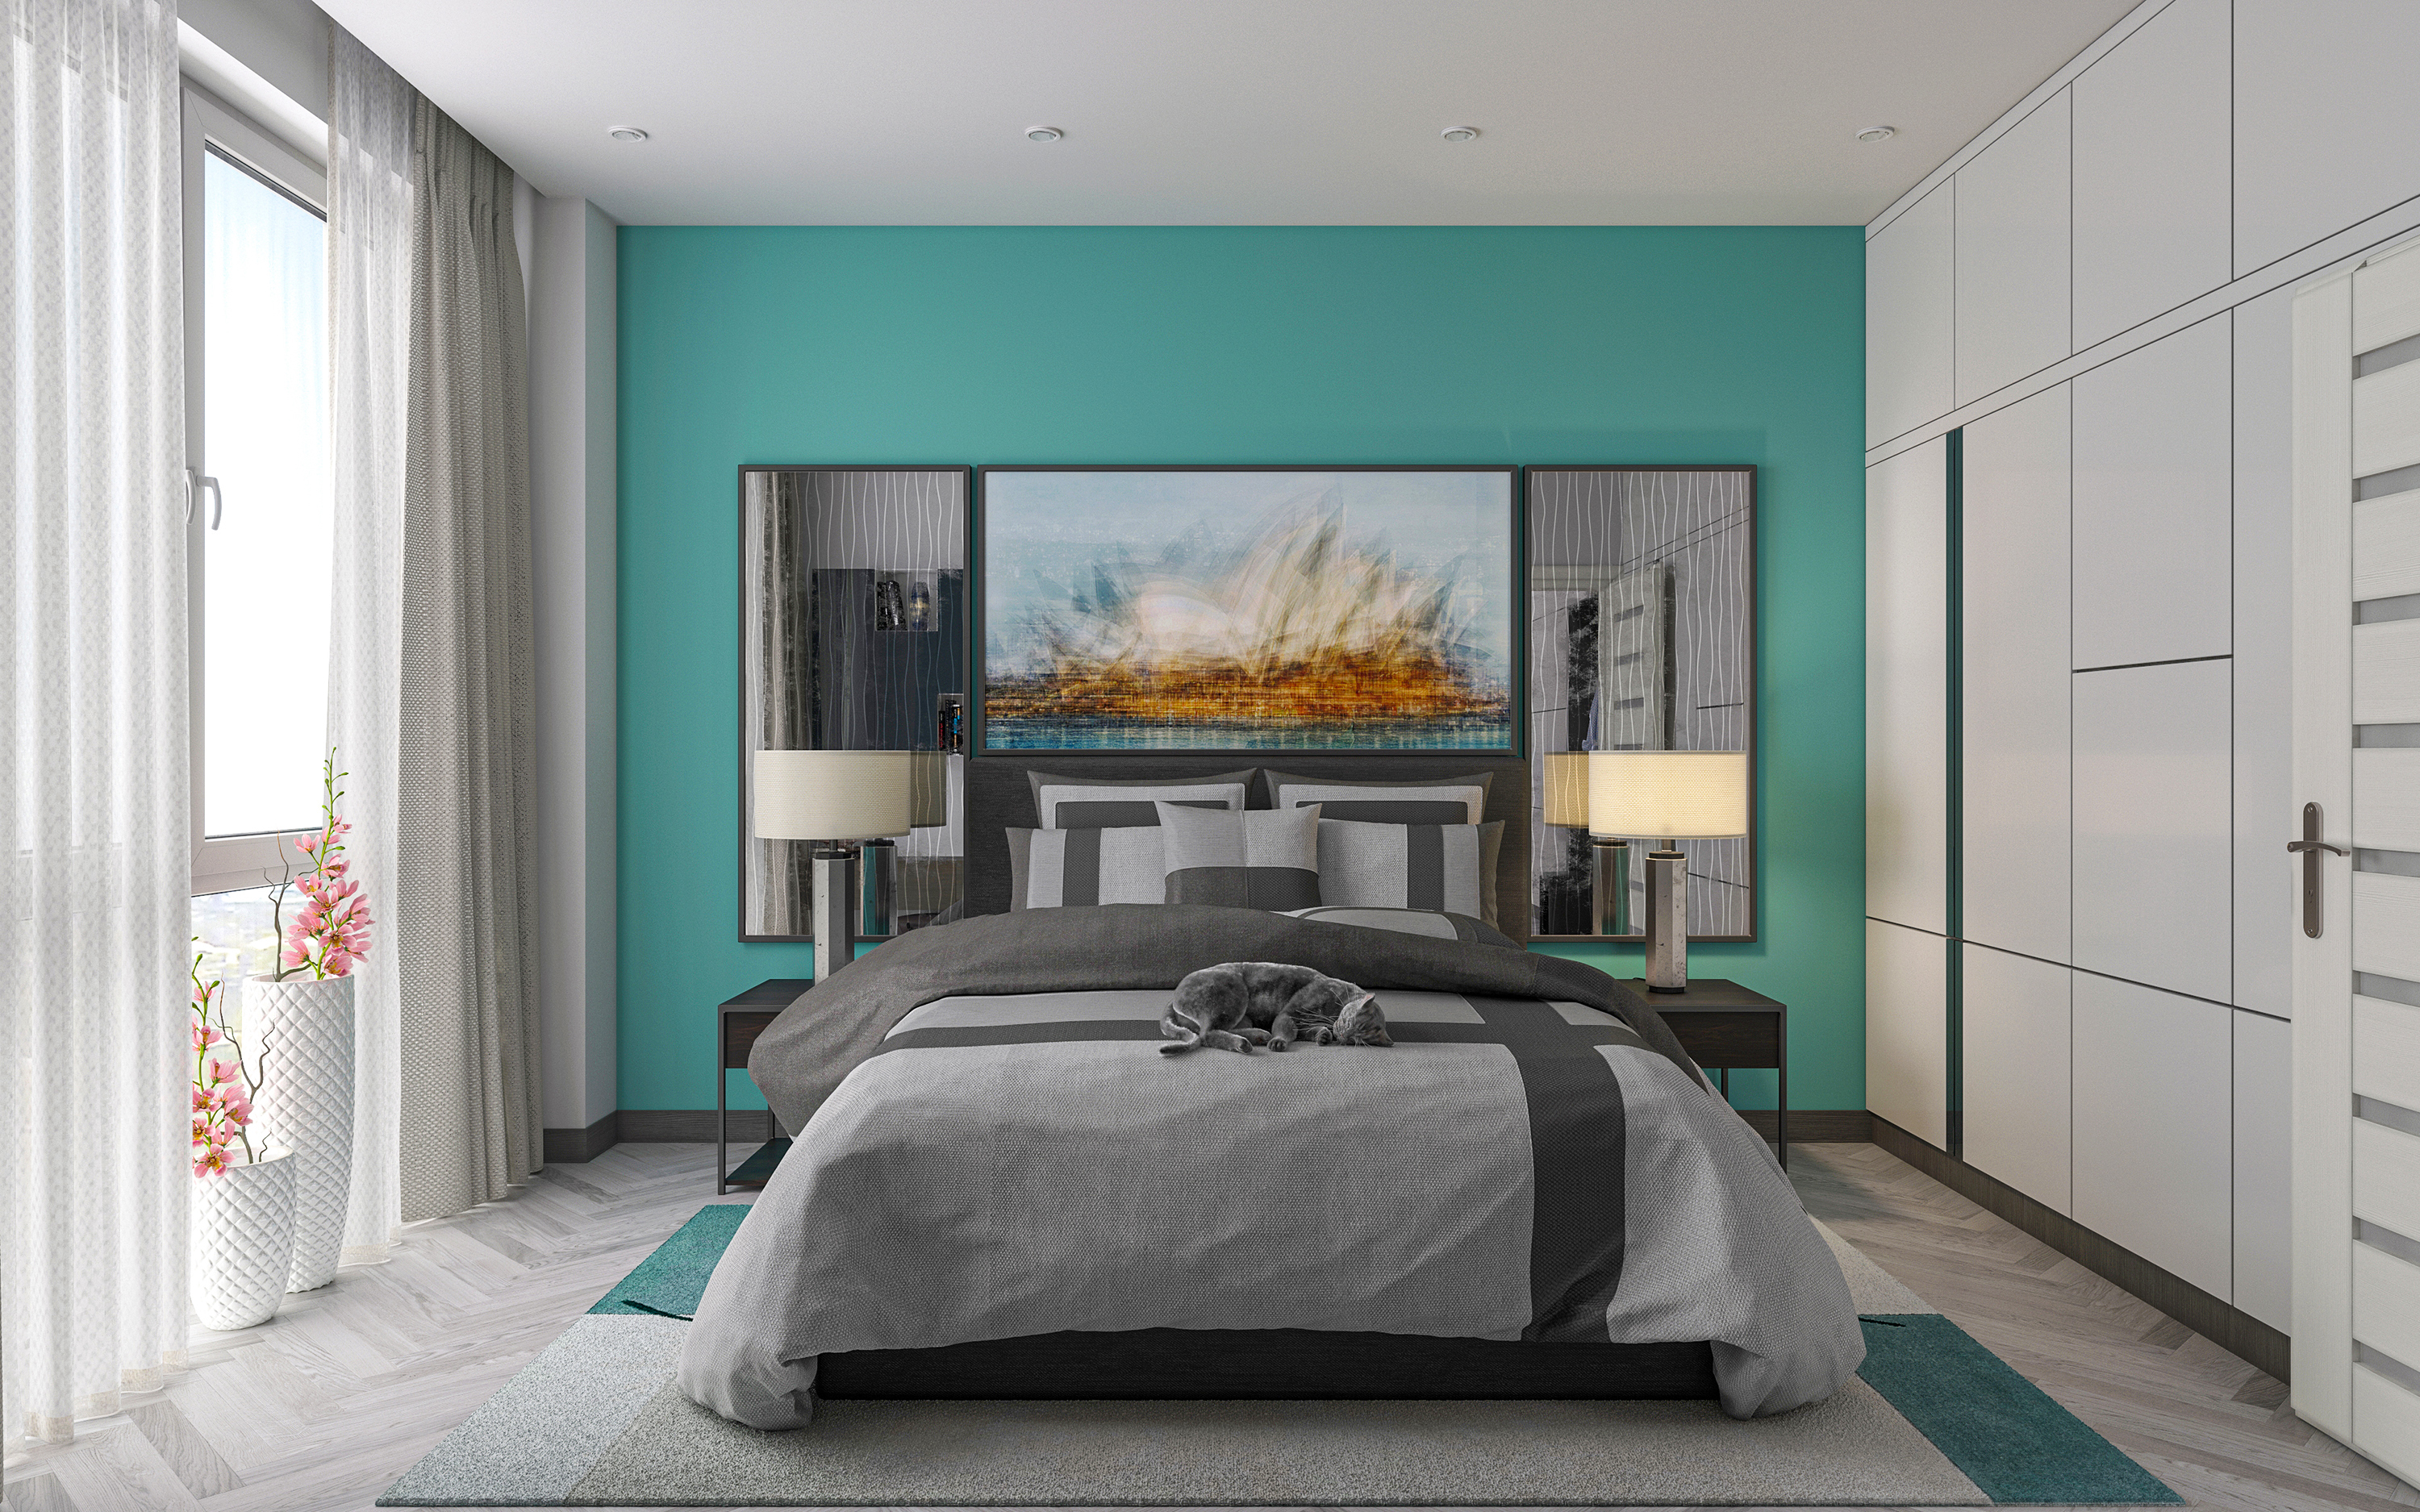 एक बेडरूम का अपार्टमेंट S66 3d max corona render में प्रस्तुत छवि